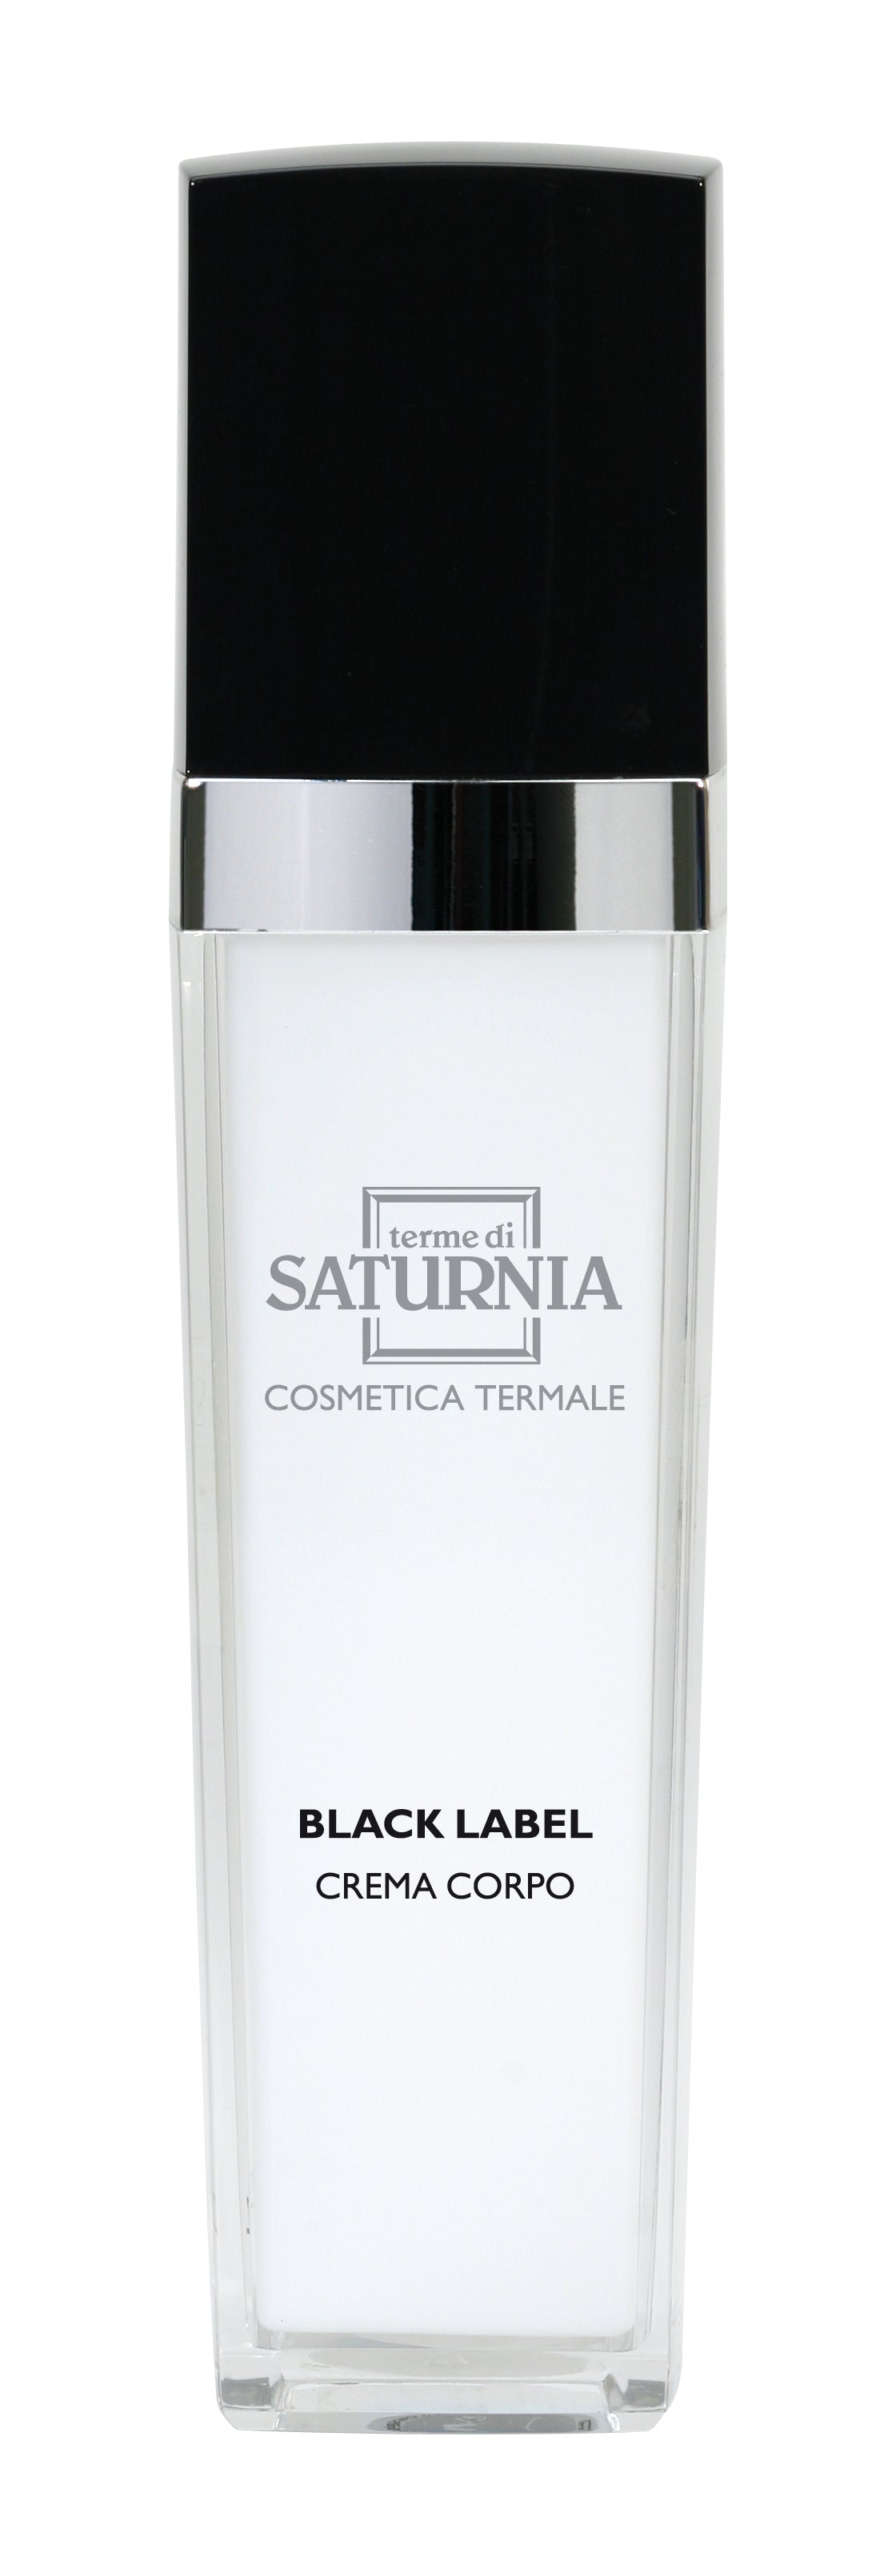 Terme di Saturnia Black Label Body Cream 4.7oz